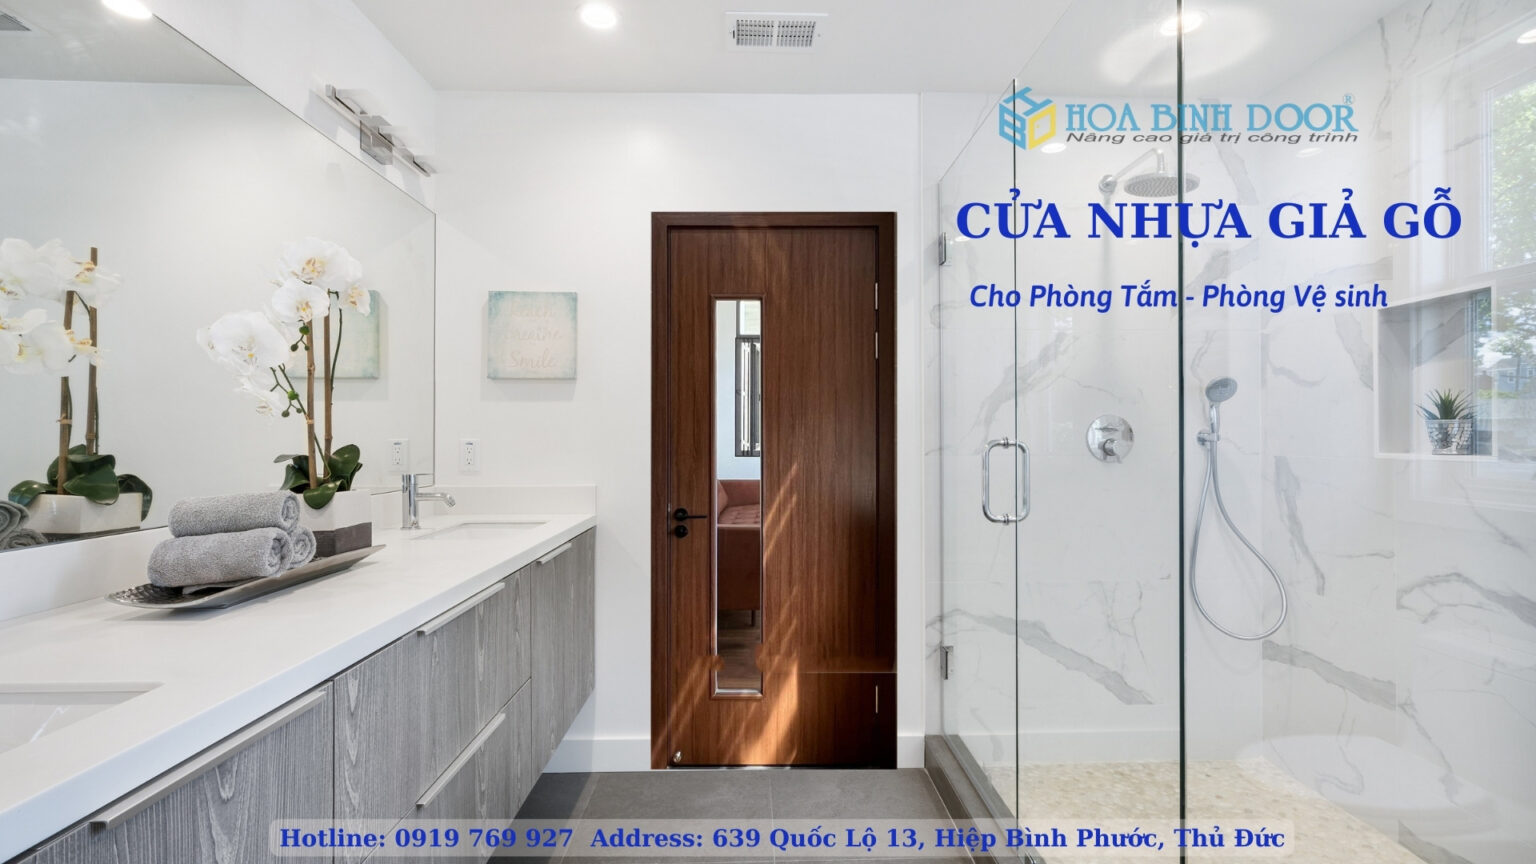 HCM - Cửa nhựa giả gỗ cho phòng tắm giá rẻ  Cua-nhua-gia-go-2-1536x864